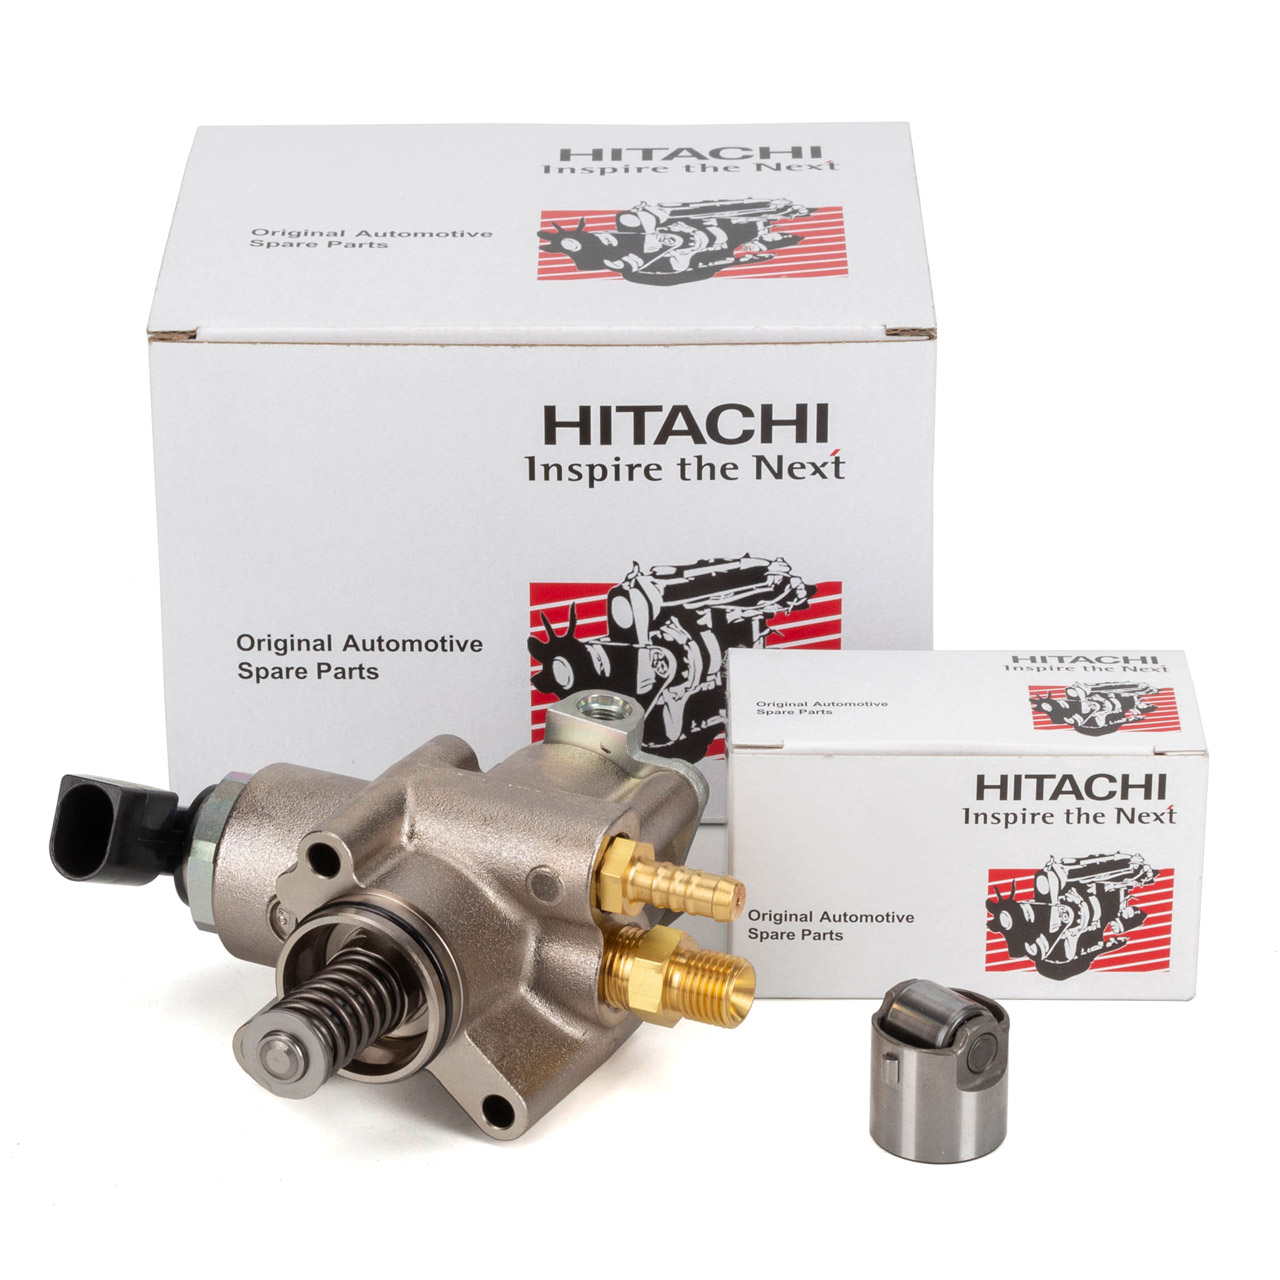 HITACHI Hochdruckpumpe + Stößel AUDI A3 8P A4 B8 A6 C7 TT 8J 2.0 TFSI 180/200/211 PS